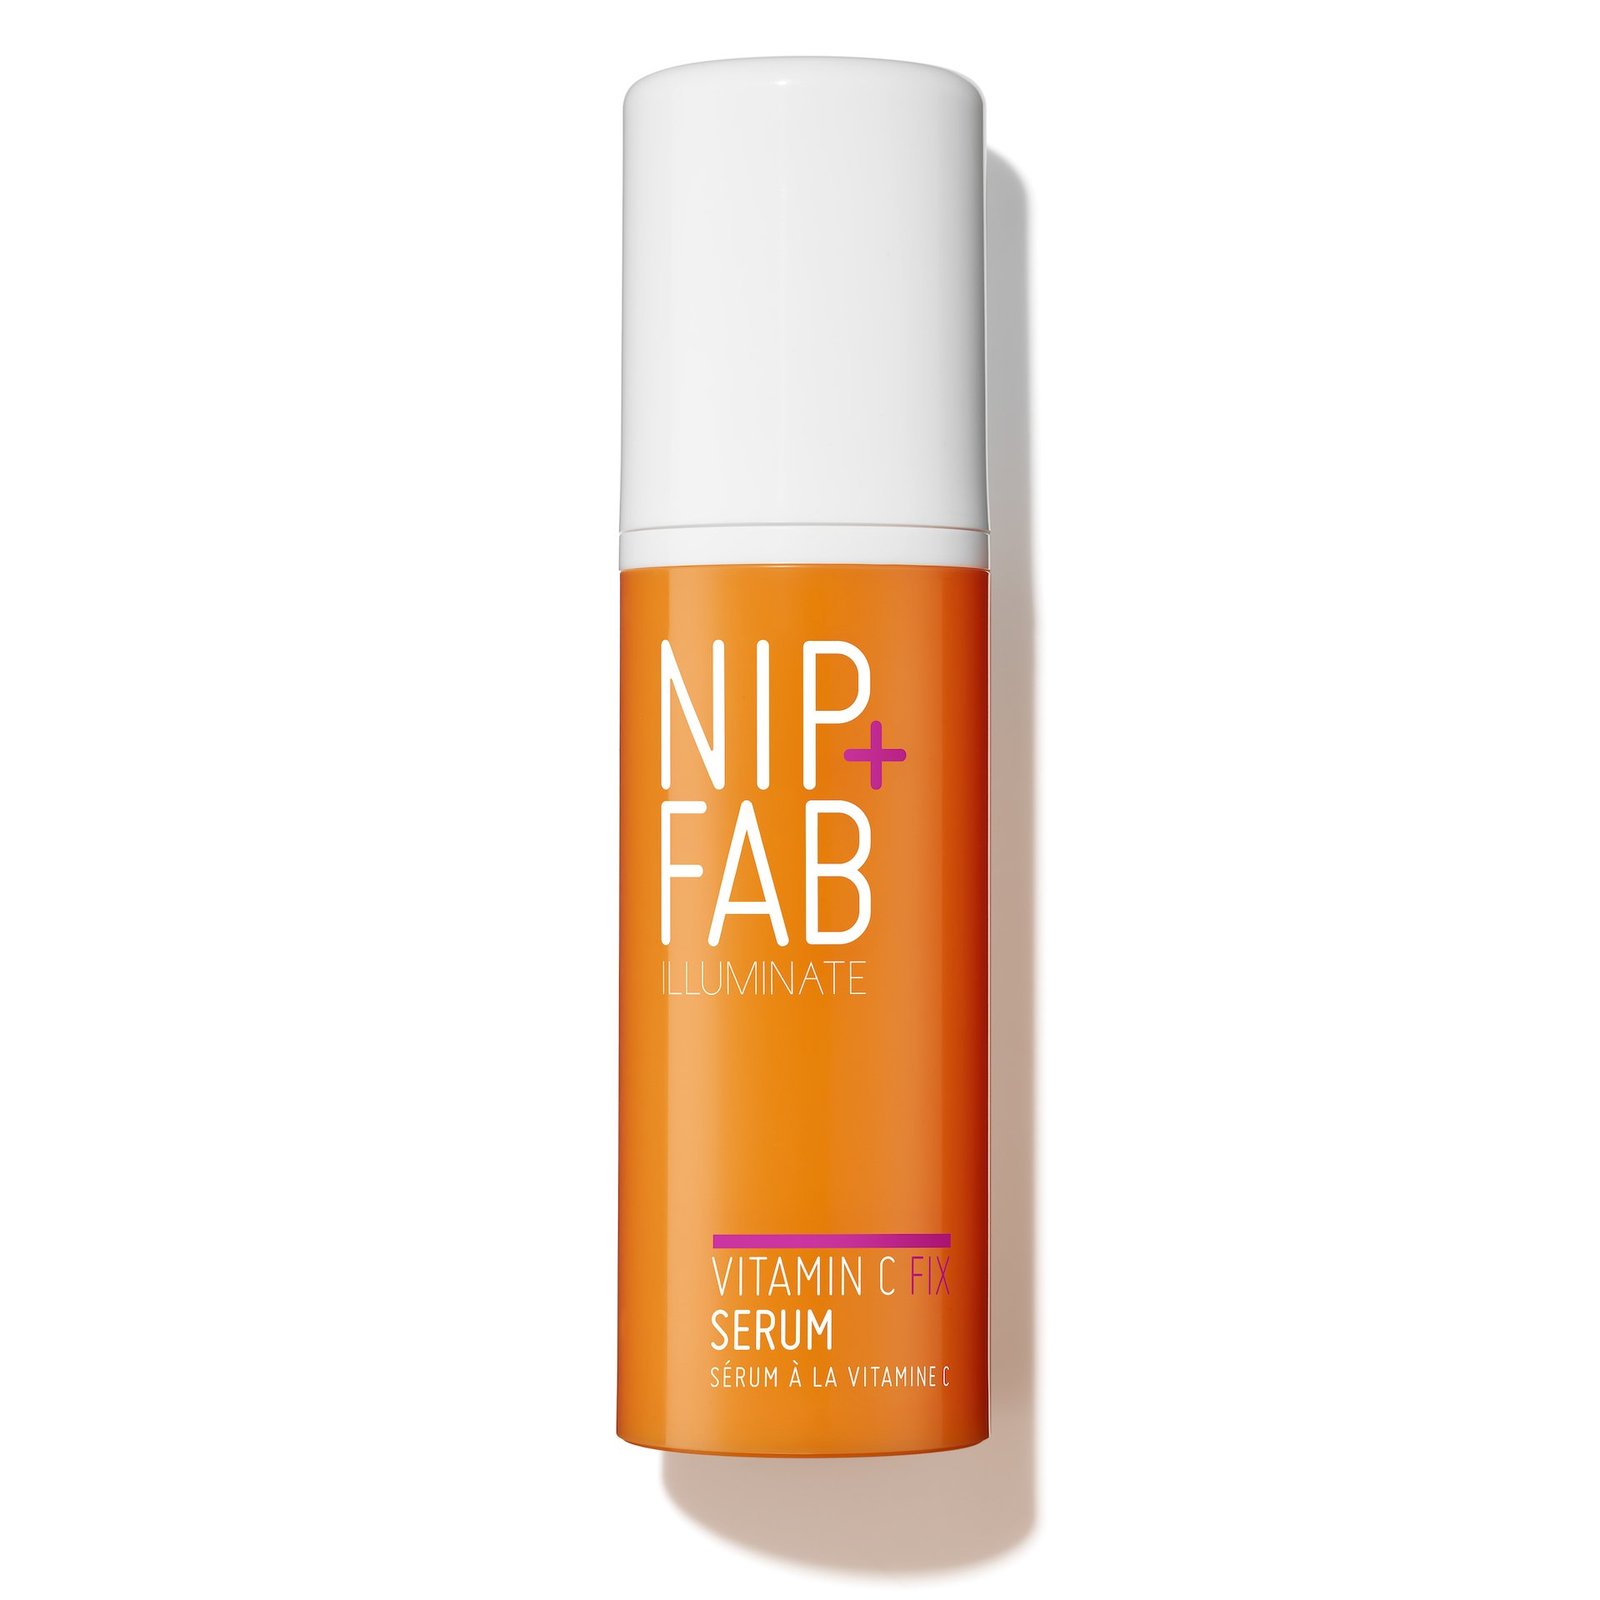 NIP+FAB Vitamin-C Fix Serum 50 ml